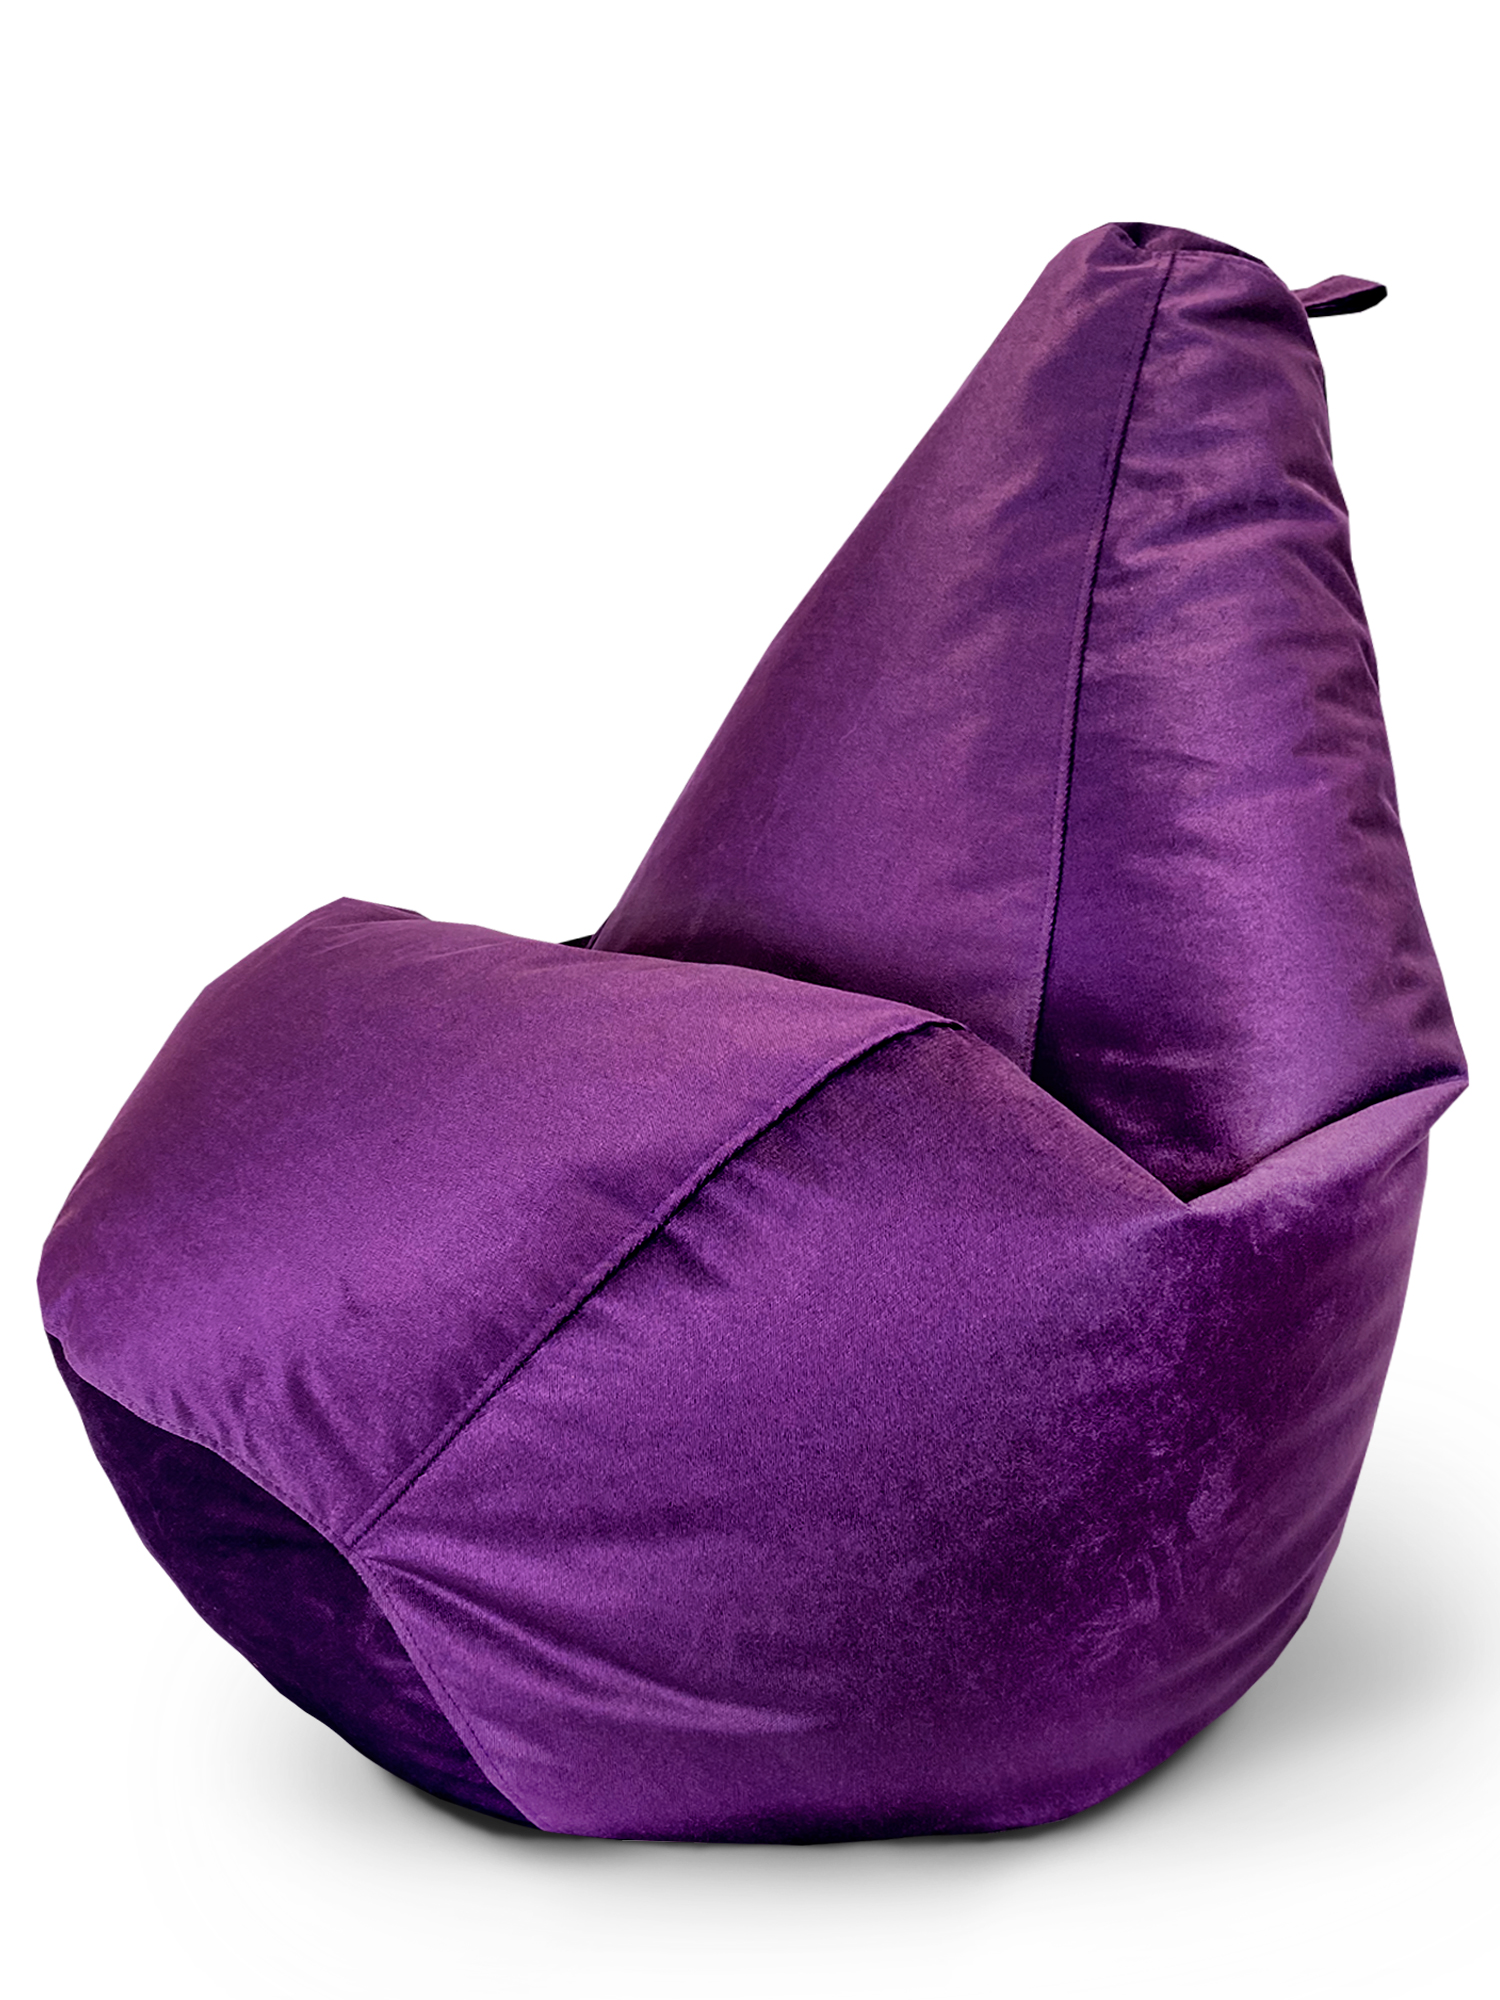 фото Кресло-мешок onpuff пуфик груша, размер хxxxl, фиолетовый велюр